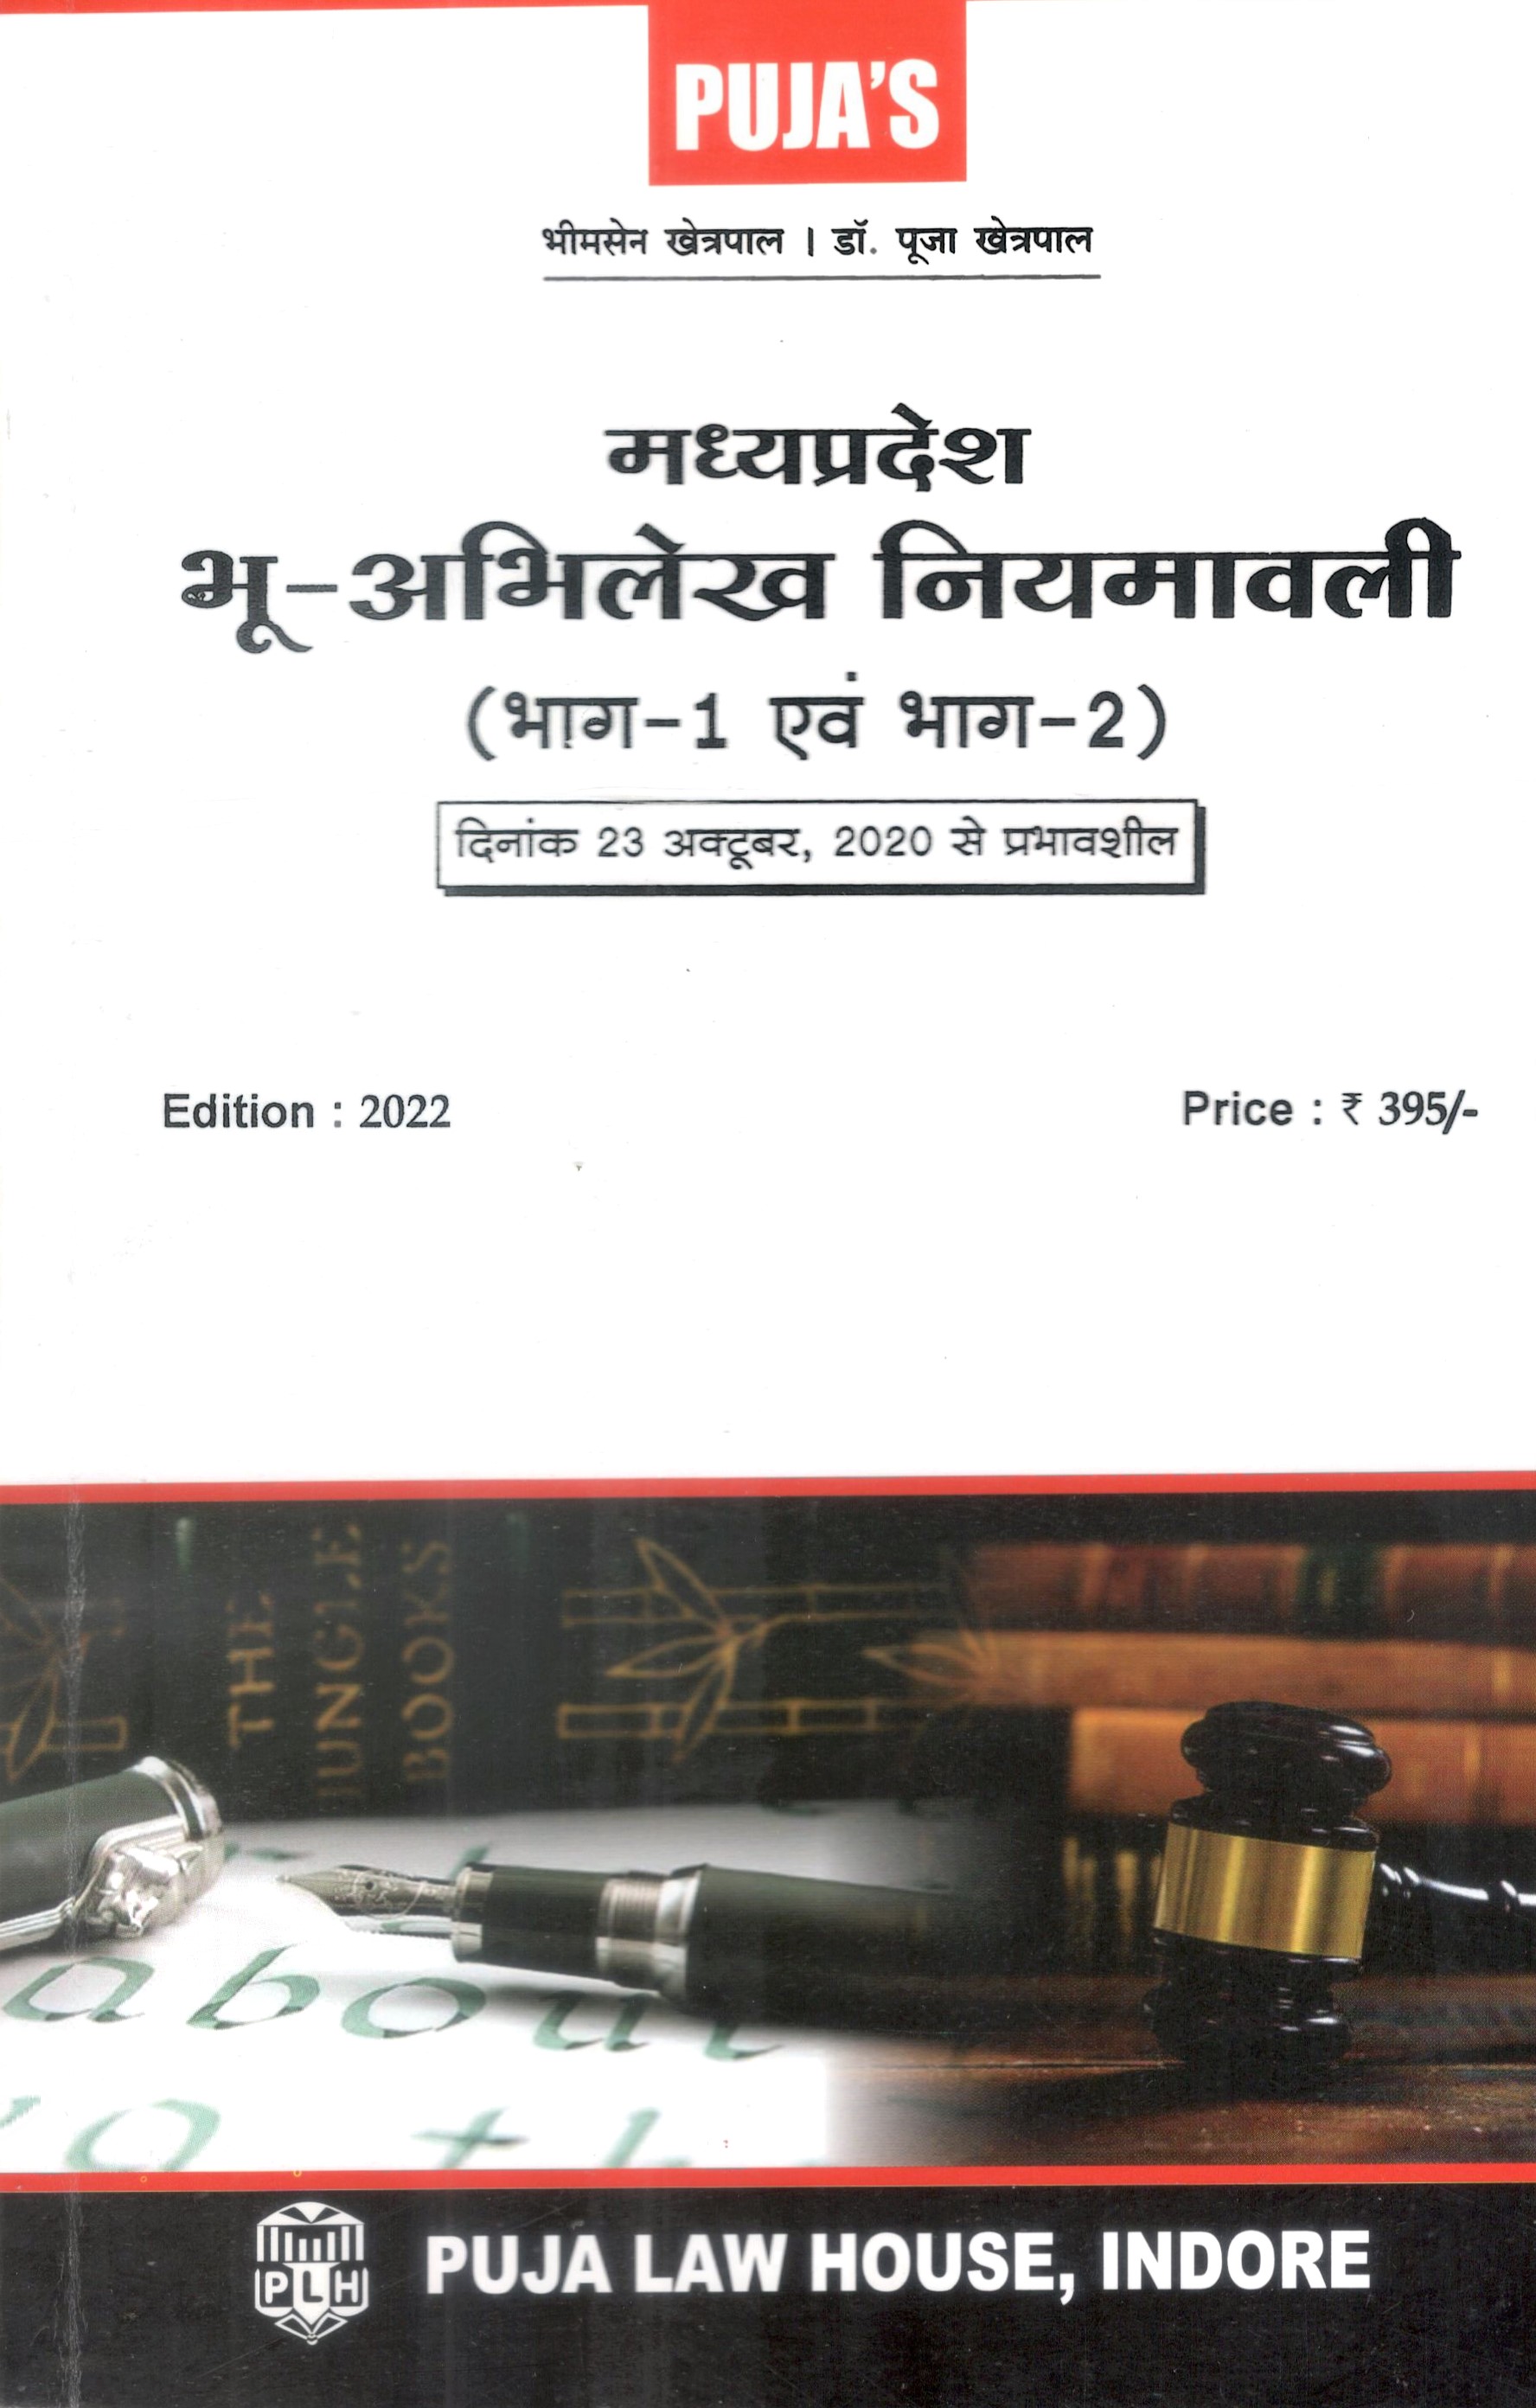 मध्य प्रदेश भू अभिलेख नियमावली (भाग-1 एवं भाग-2) / Madhya Pradesh Land Records Manual (Part-1 and Part-2)